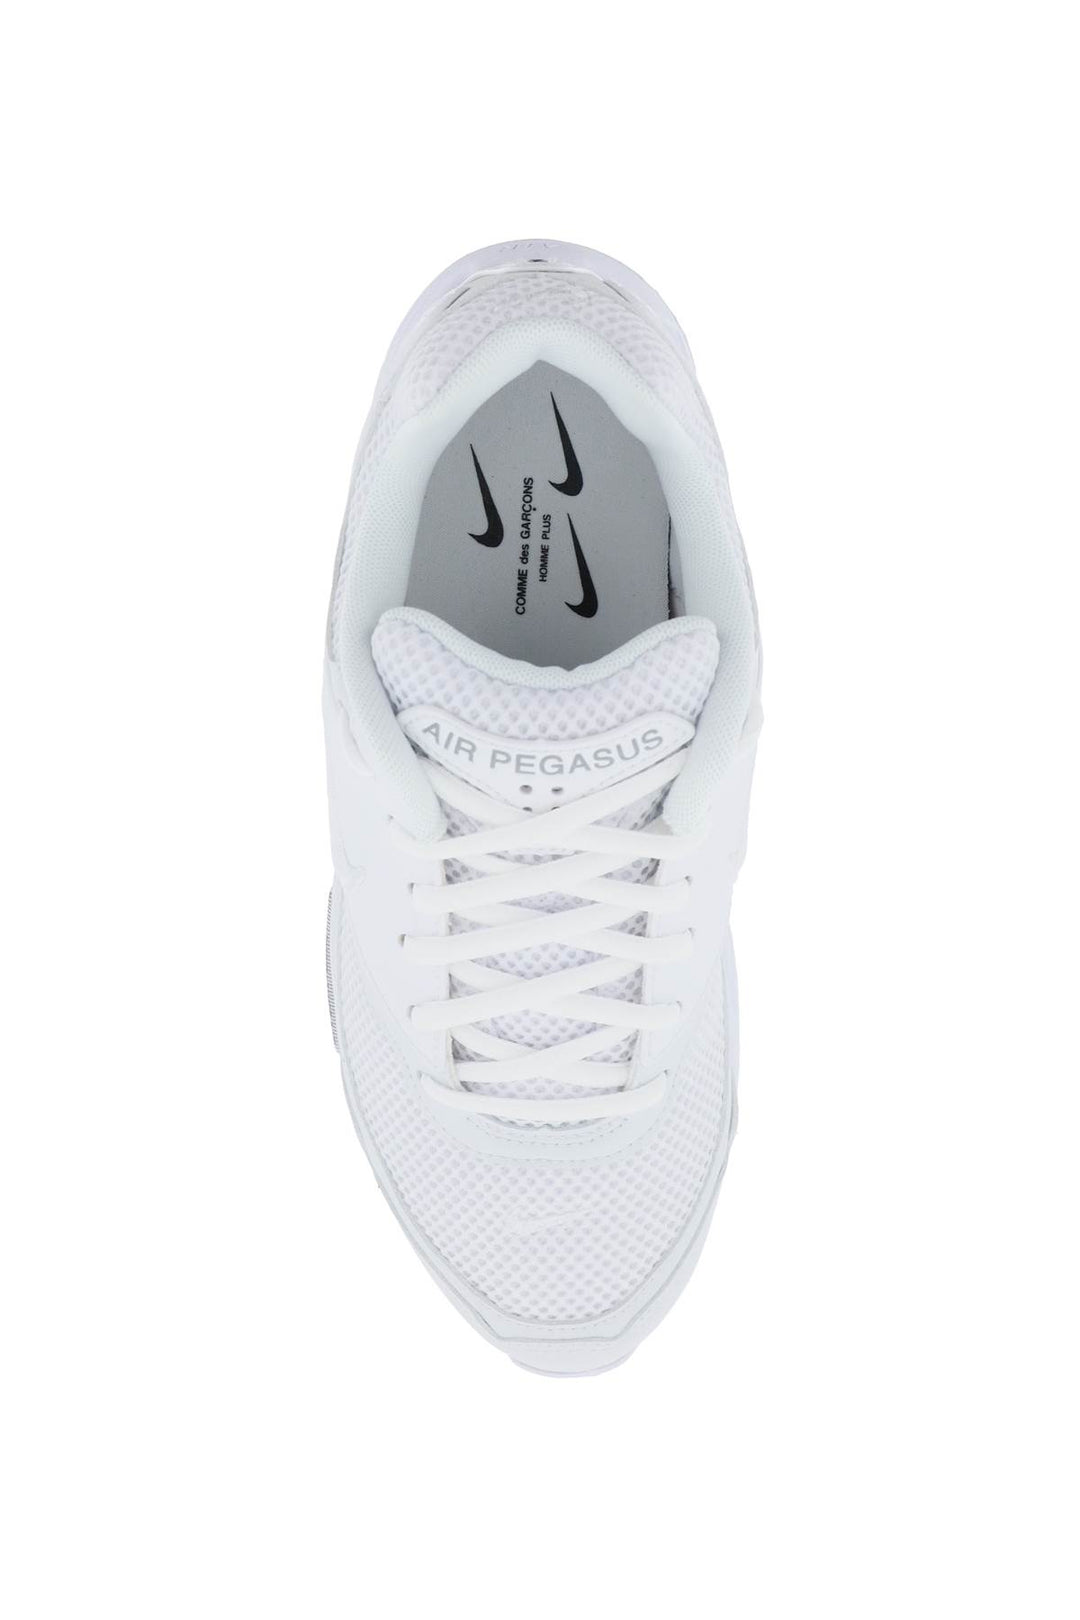 Comme Des Garcons Homme Plus Air Pegasus 2005 Sp Sneakers X Nike   White